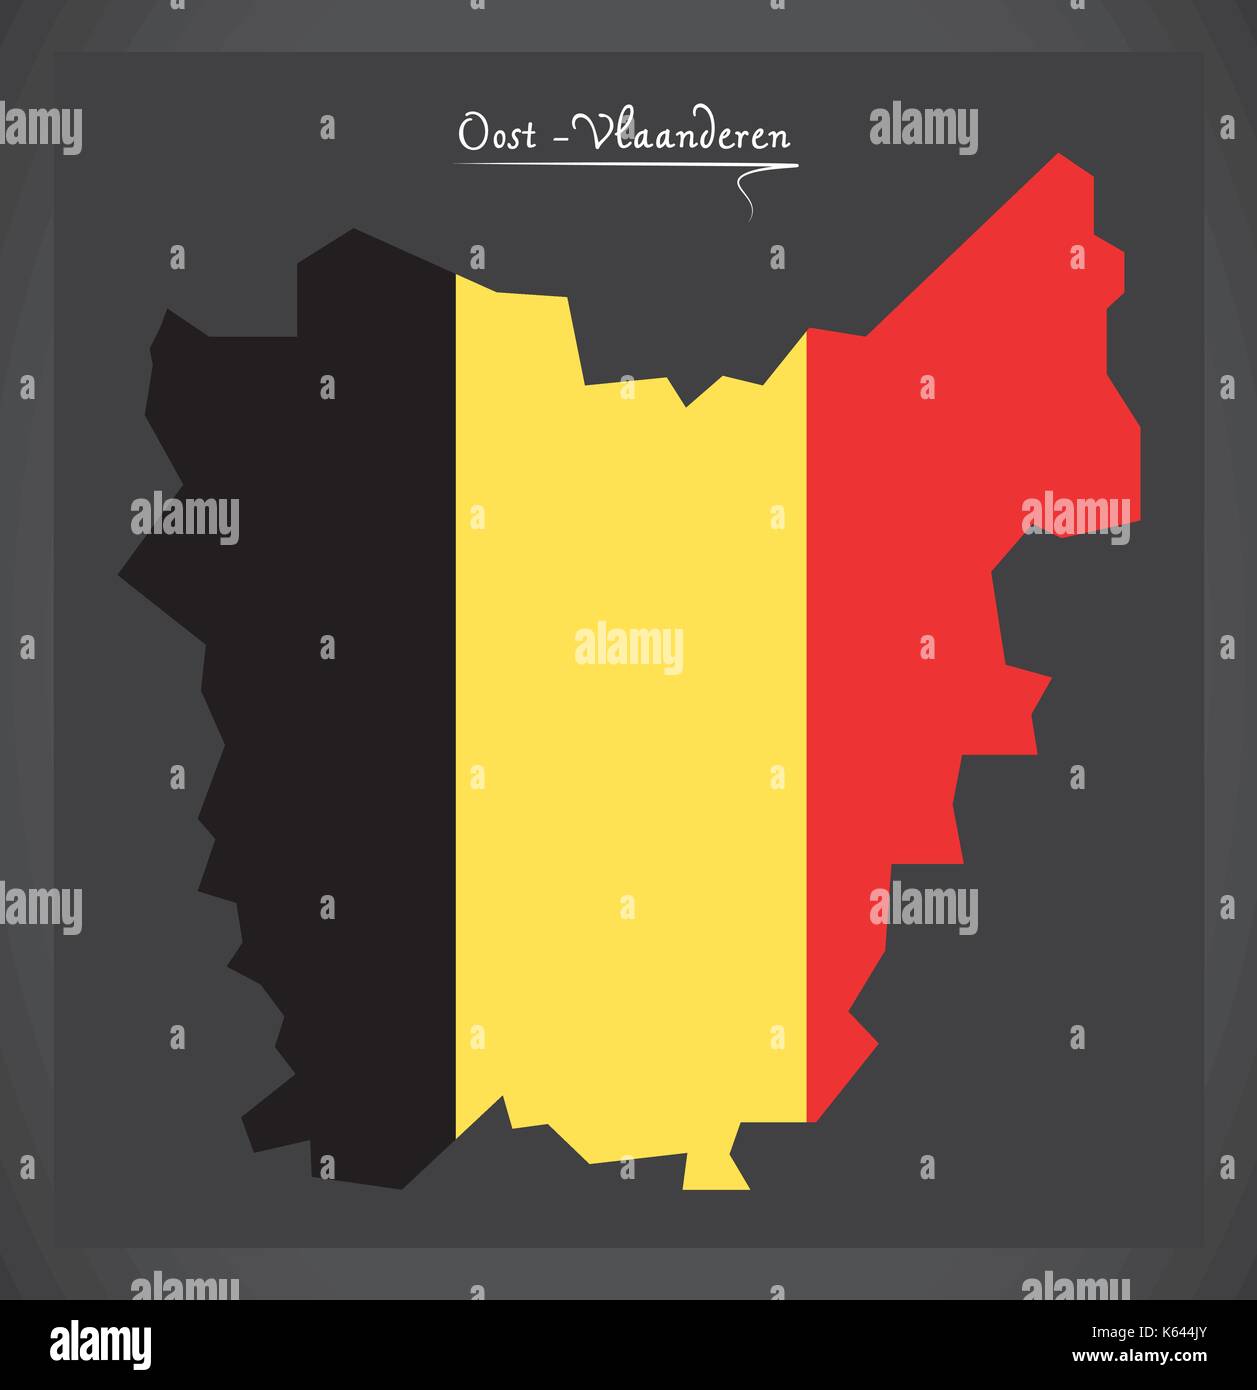 Oost-Vlaanderen map of Belgium with Belgian national flag illustration Stock Vector